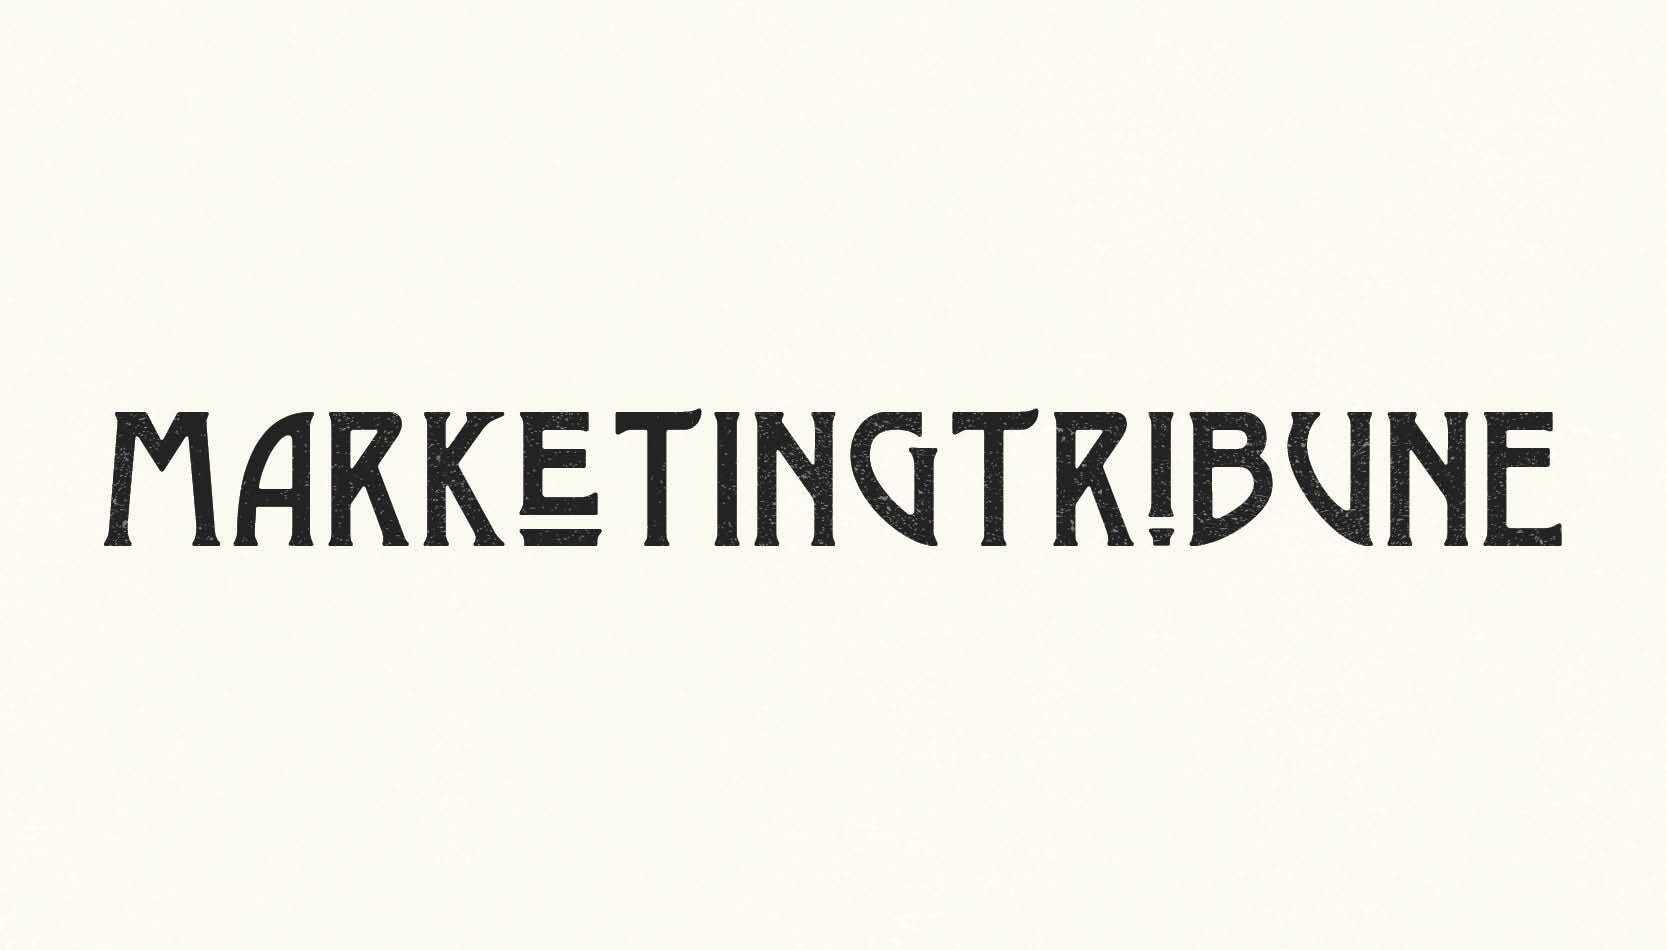 Marketing tribune logo